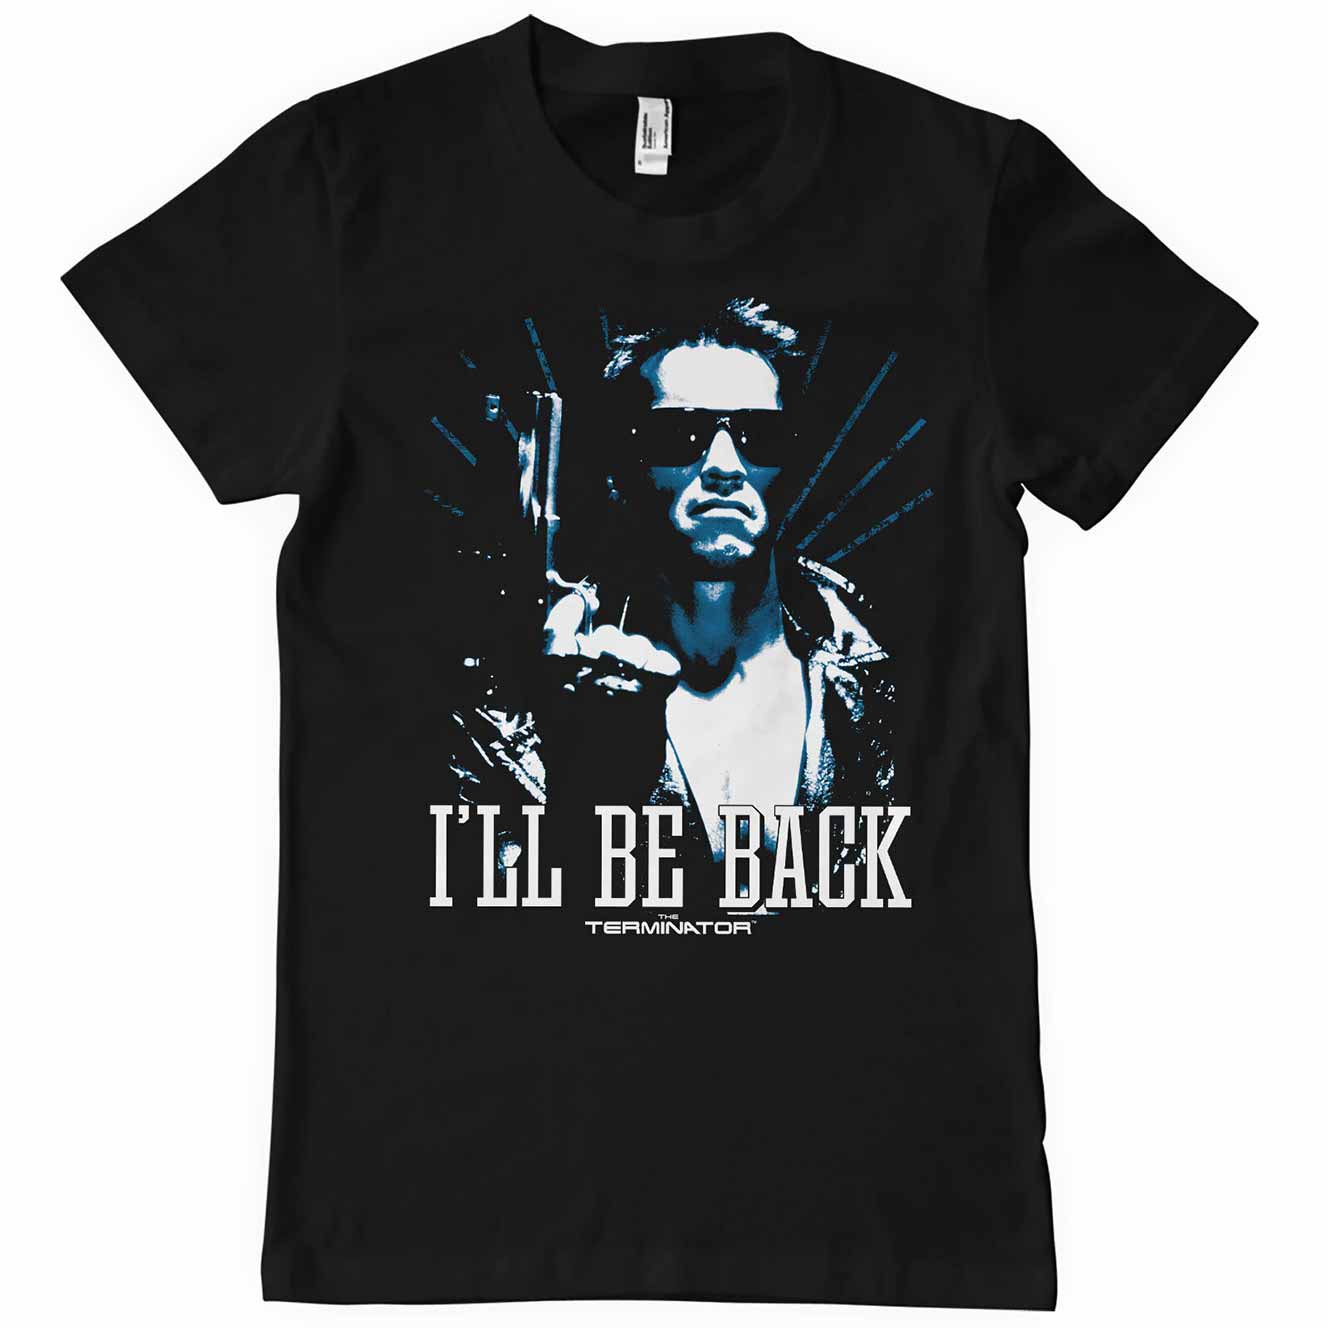 Sort T-shirt med Arnold som Terminatoren der siger i'll be back trykt på brystet